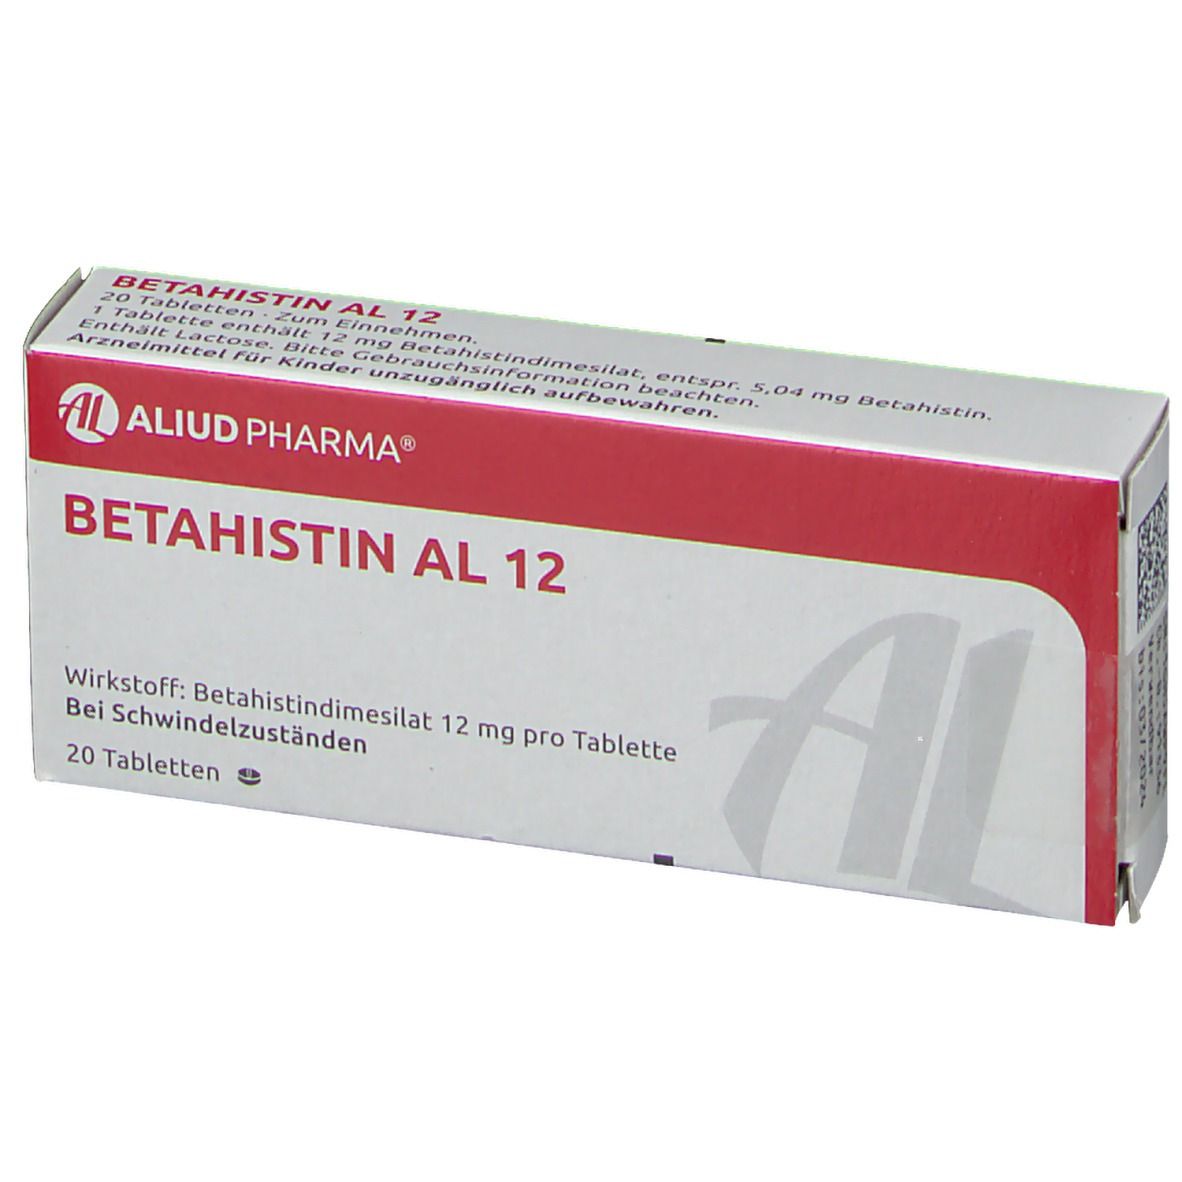 Betahistin AL 12